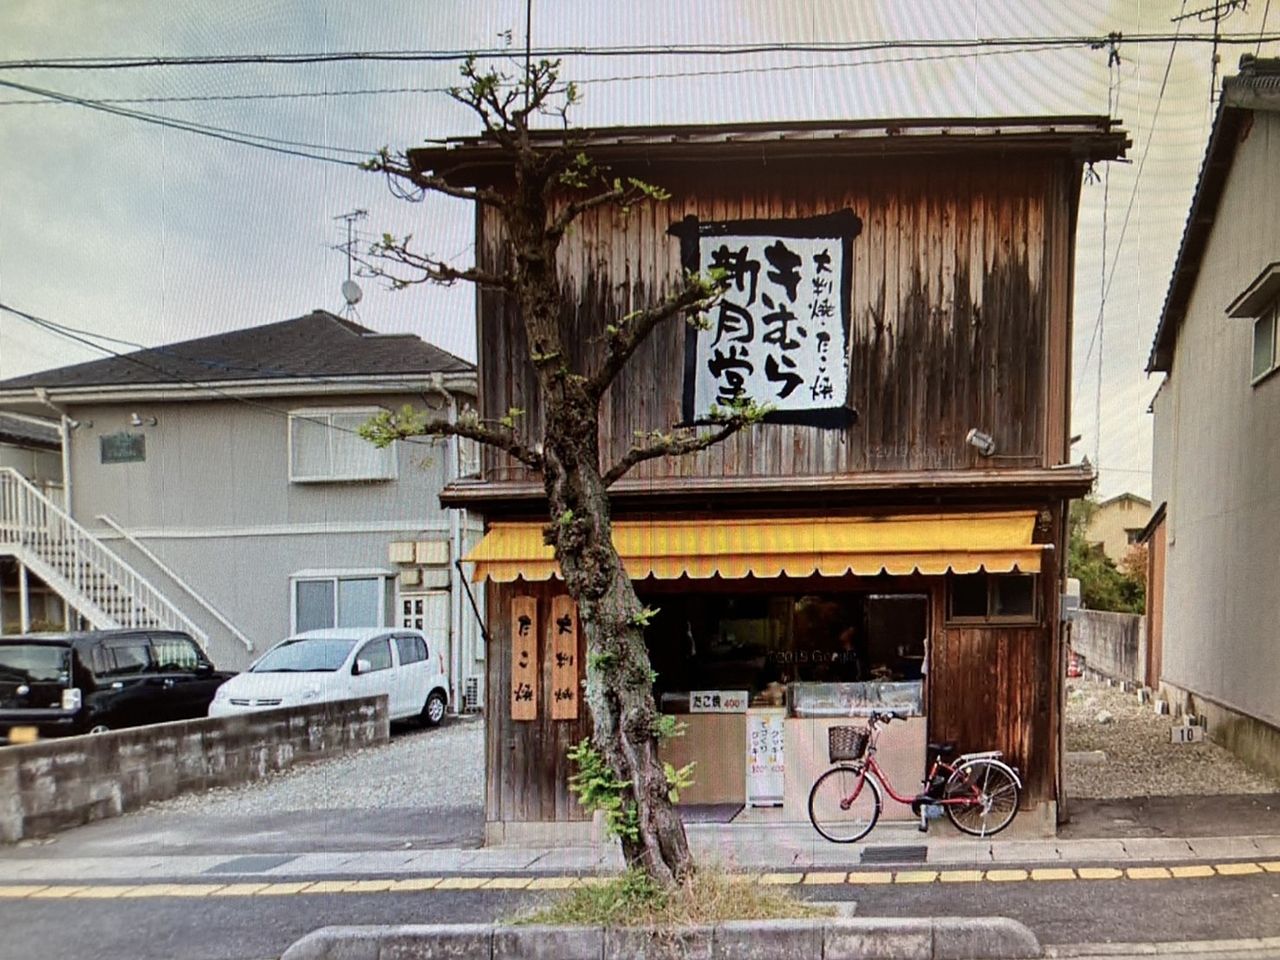 残念。寂しいニュースです。76年に渡り松江市民に愛され続けてきた、きむら新月堂さん(南田町)ですが、この度、年齢的な事情により閉店されるそうです。ご主人は79歳、奥様も75歳。仕込みも、焼くのも重労…